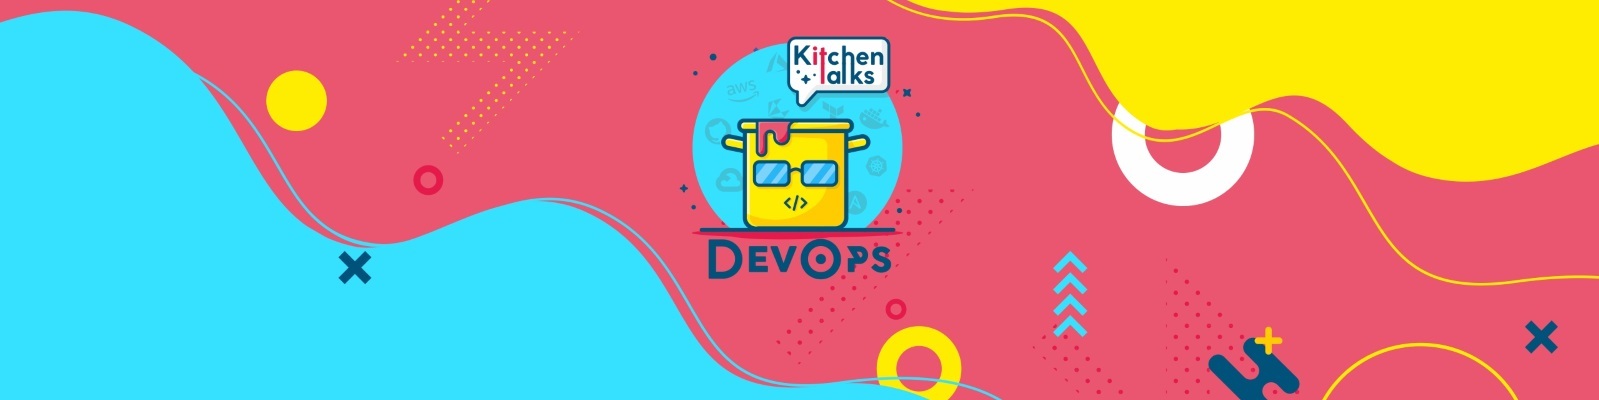 The DevOps Kitchen Talks’s Podcast